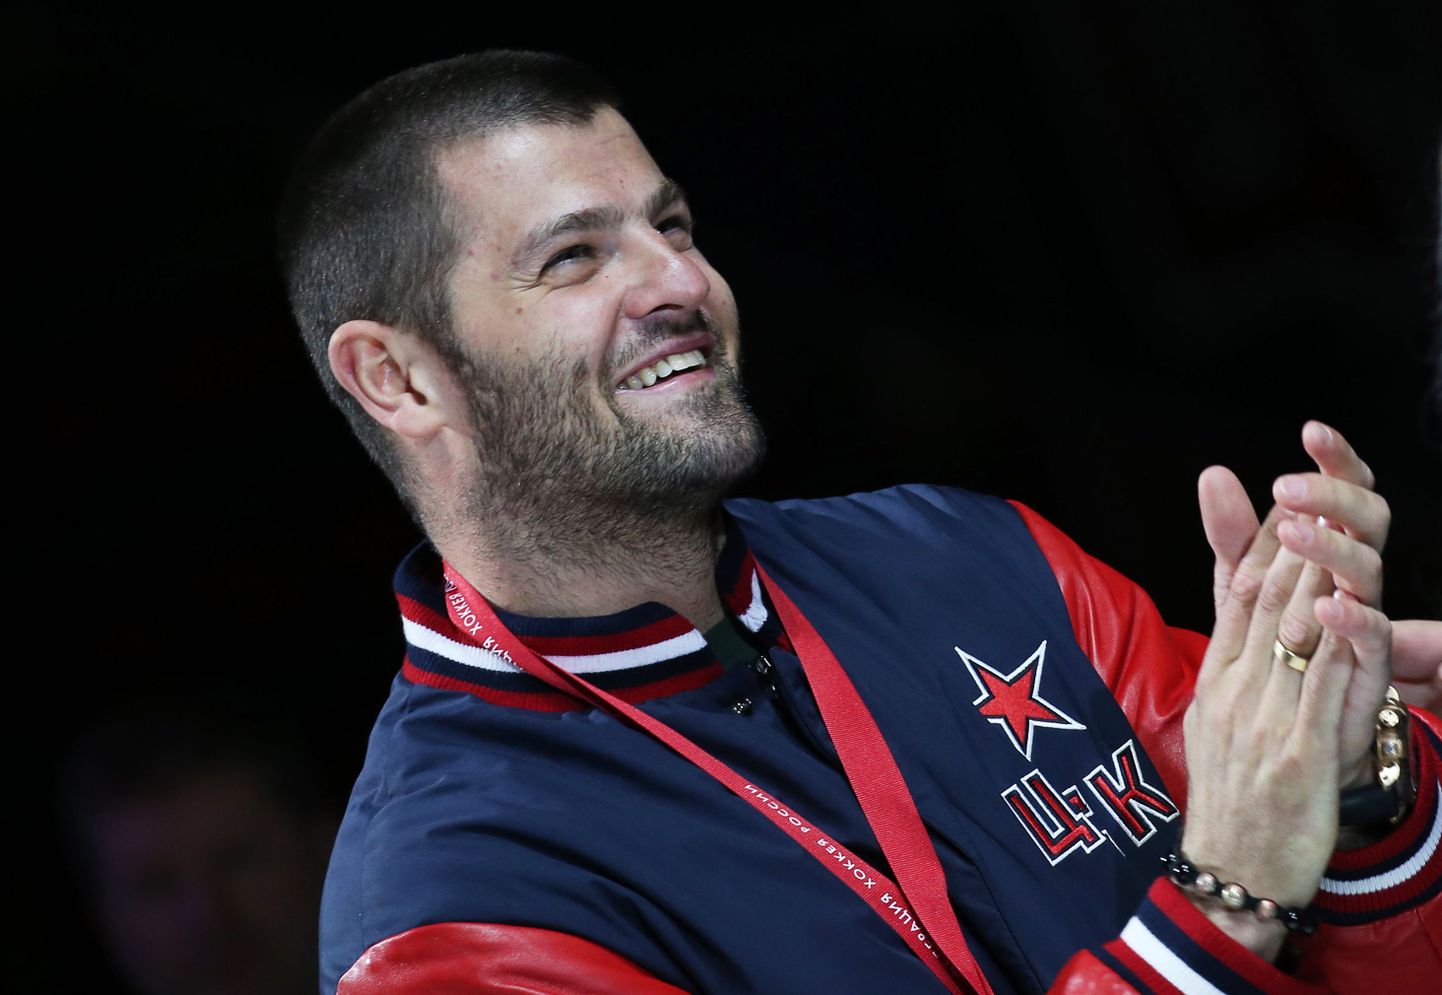 Радулов в составе ЦСКА получает серебряный медали чемпионата России (25.05.2016).